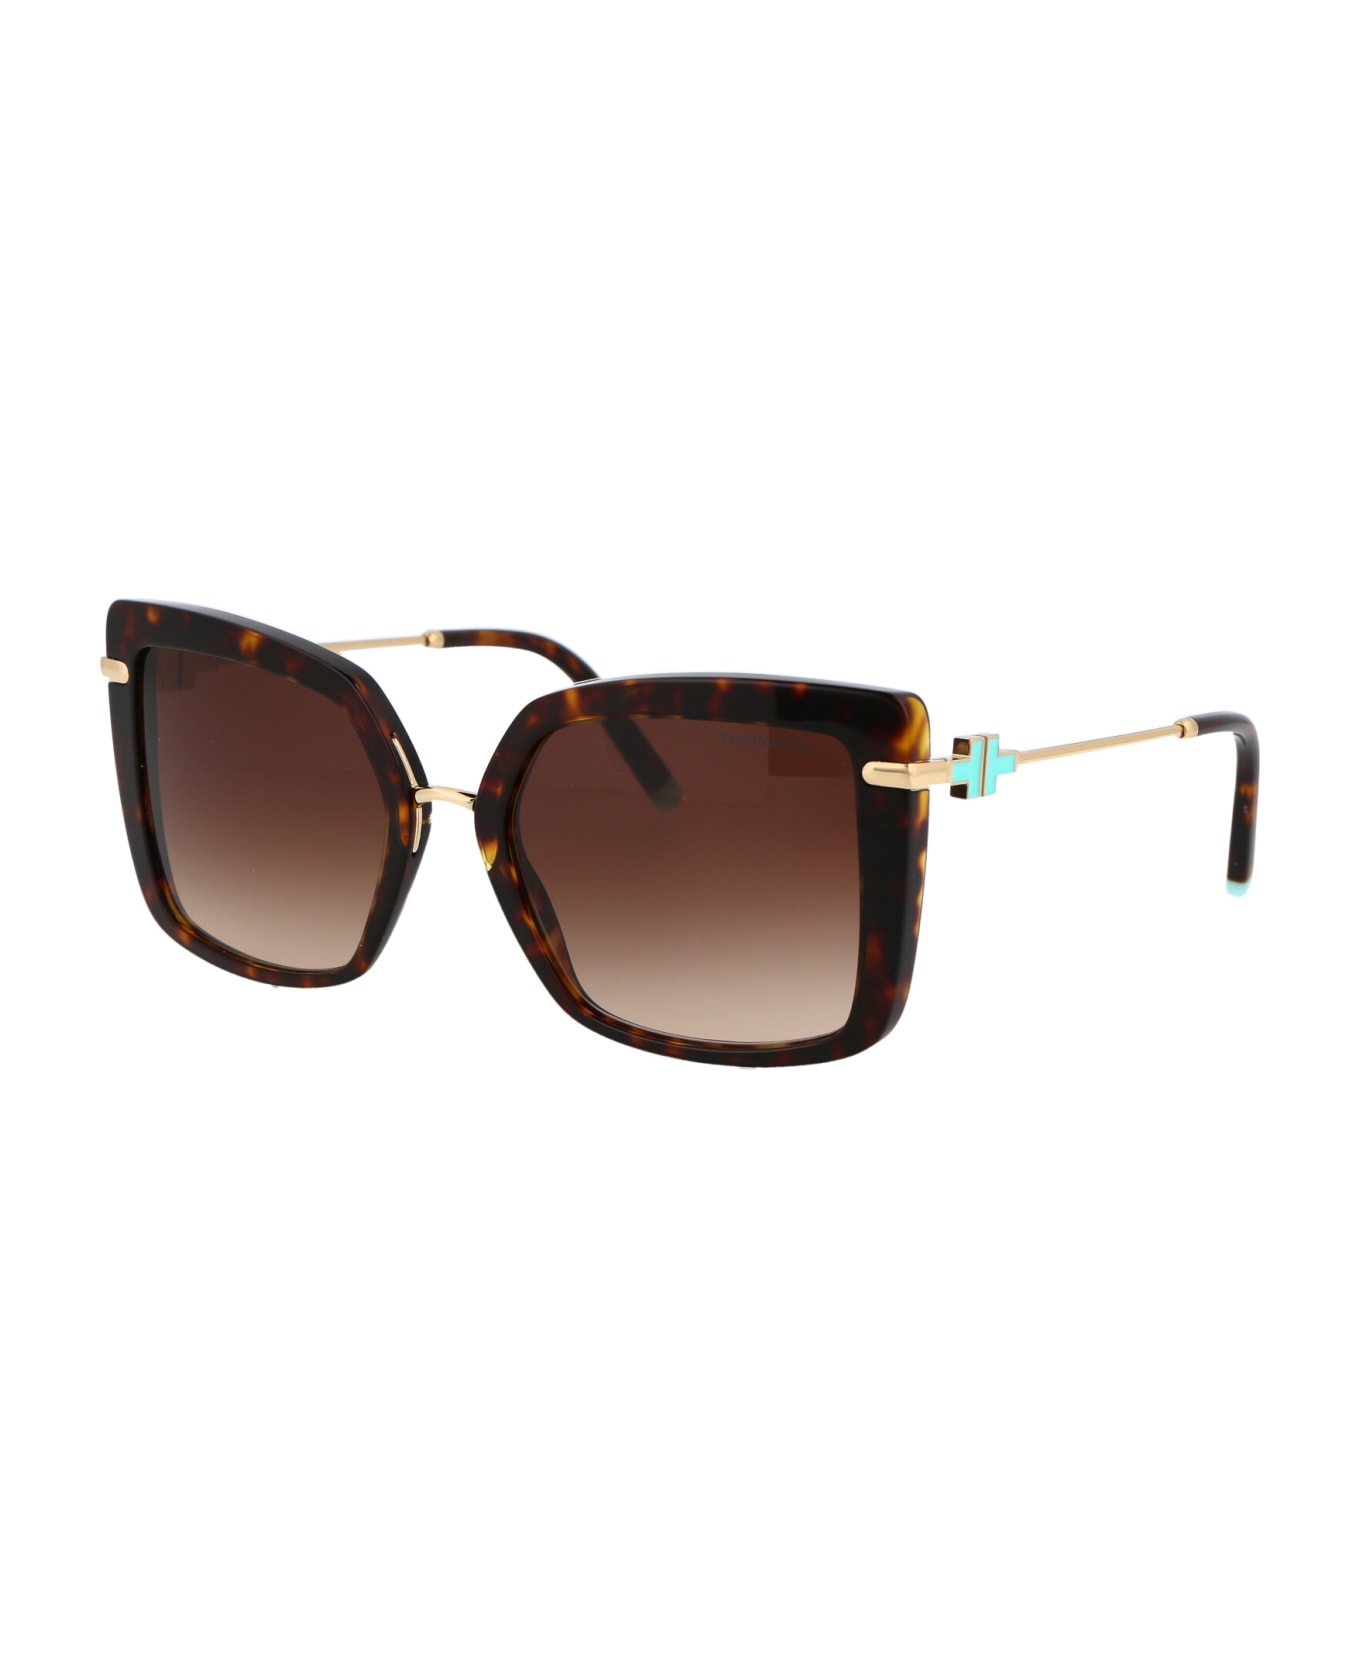 Tiffany & Co. 0tf4185 Sunglasses - 80153B Havana サングラス